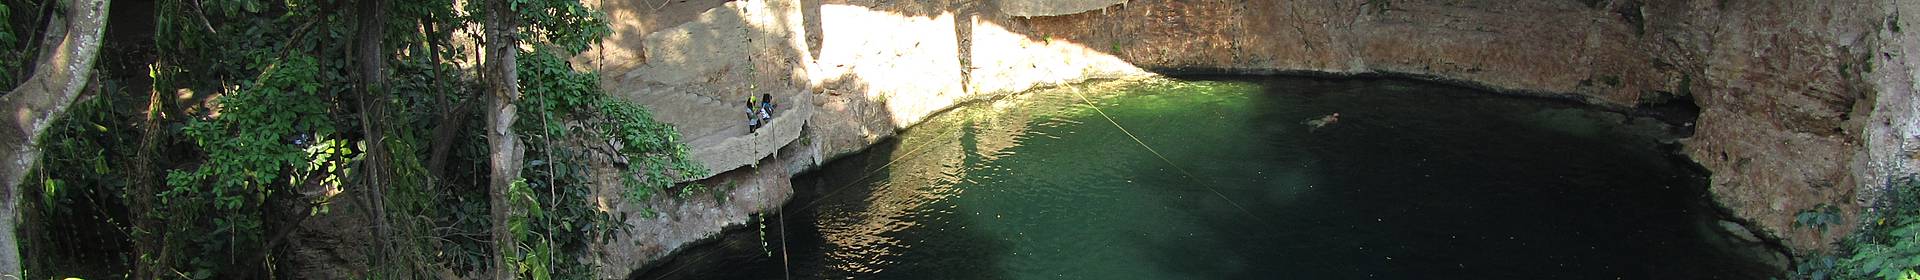 Cenote Dzitnup